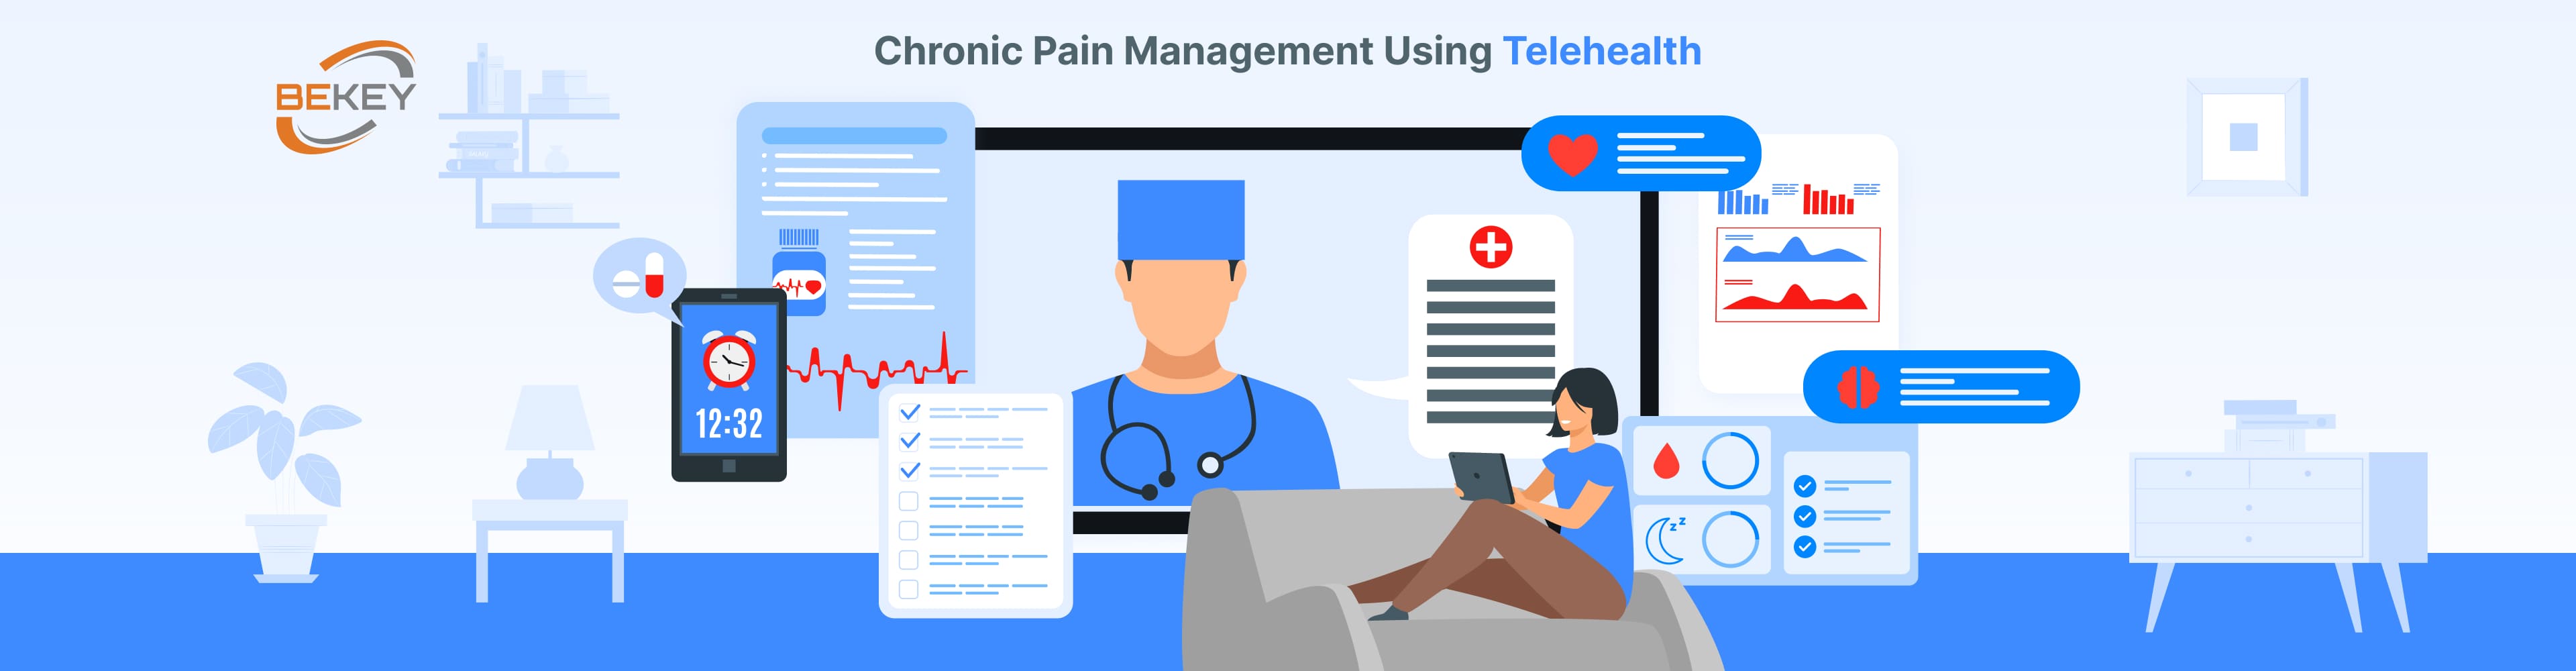 Chronic Pain Management Using Telehealth - image